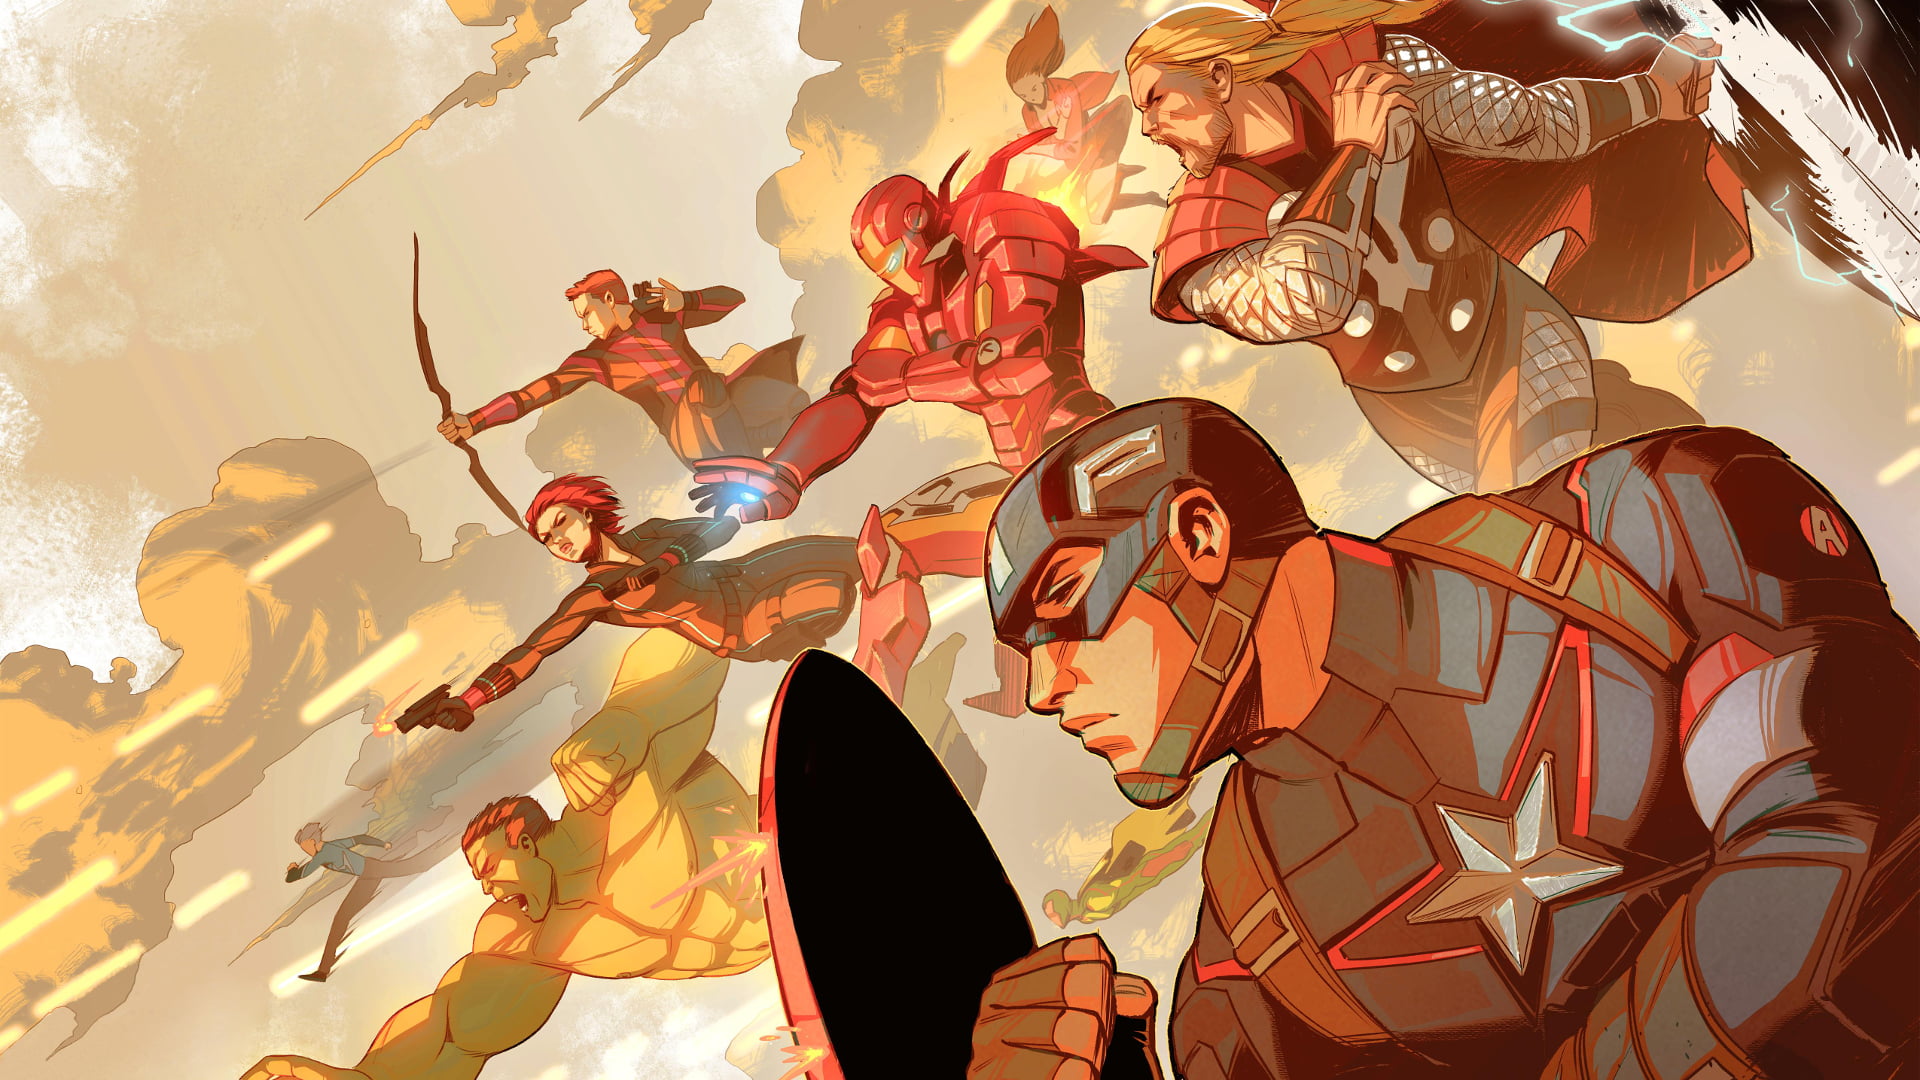 Avengers cartoon illustration, The Avengers, Captain America